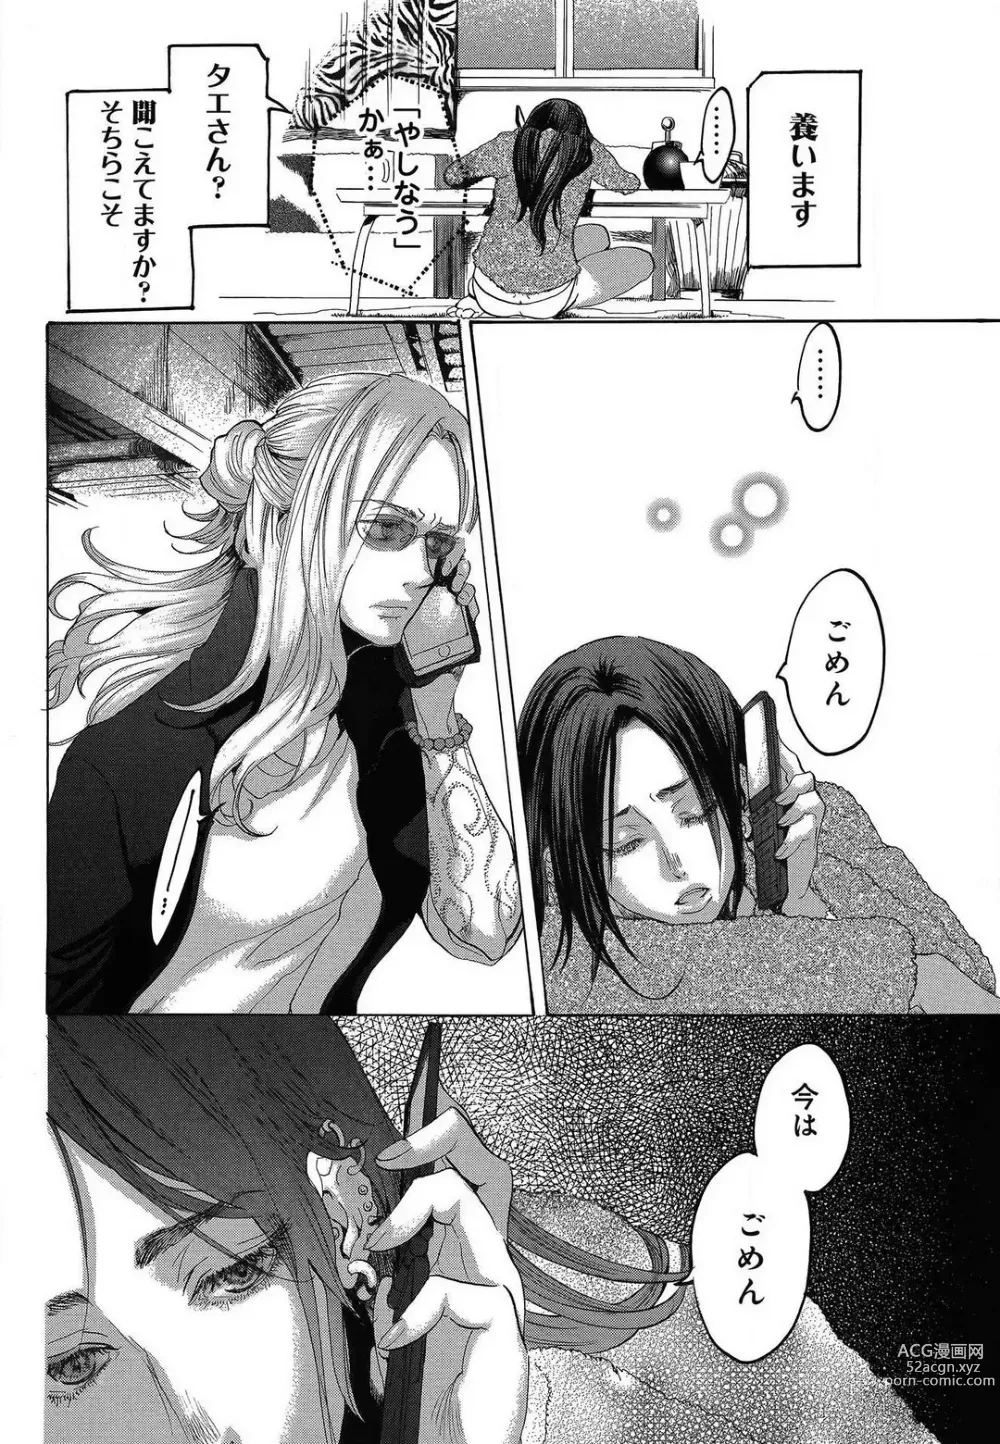 Page 476 of manga Kizutsukeru you ni Aishiaimashou 1-10